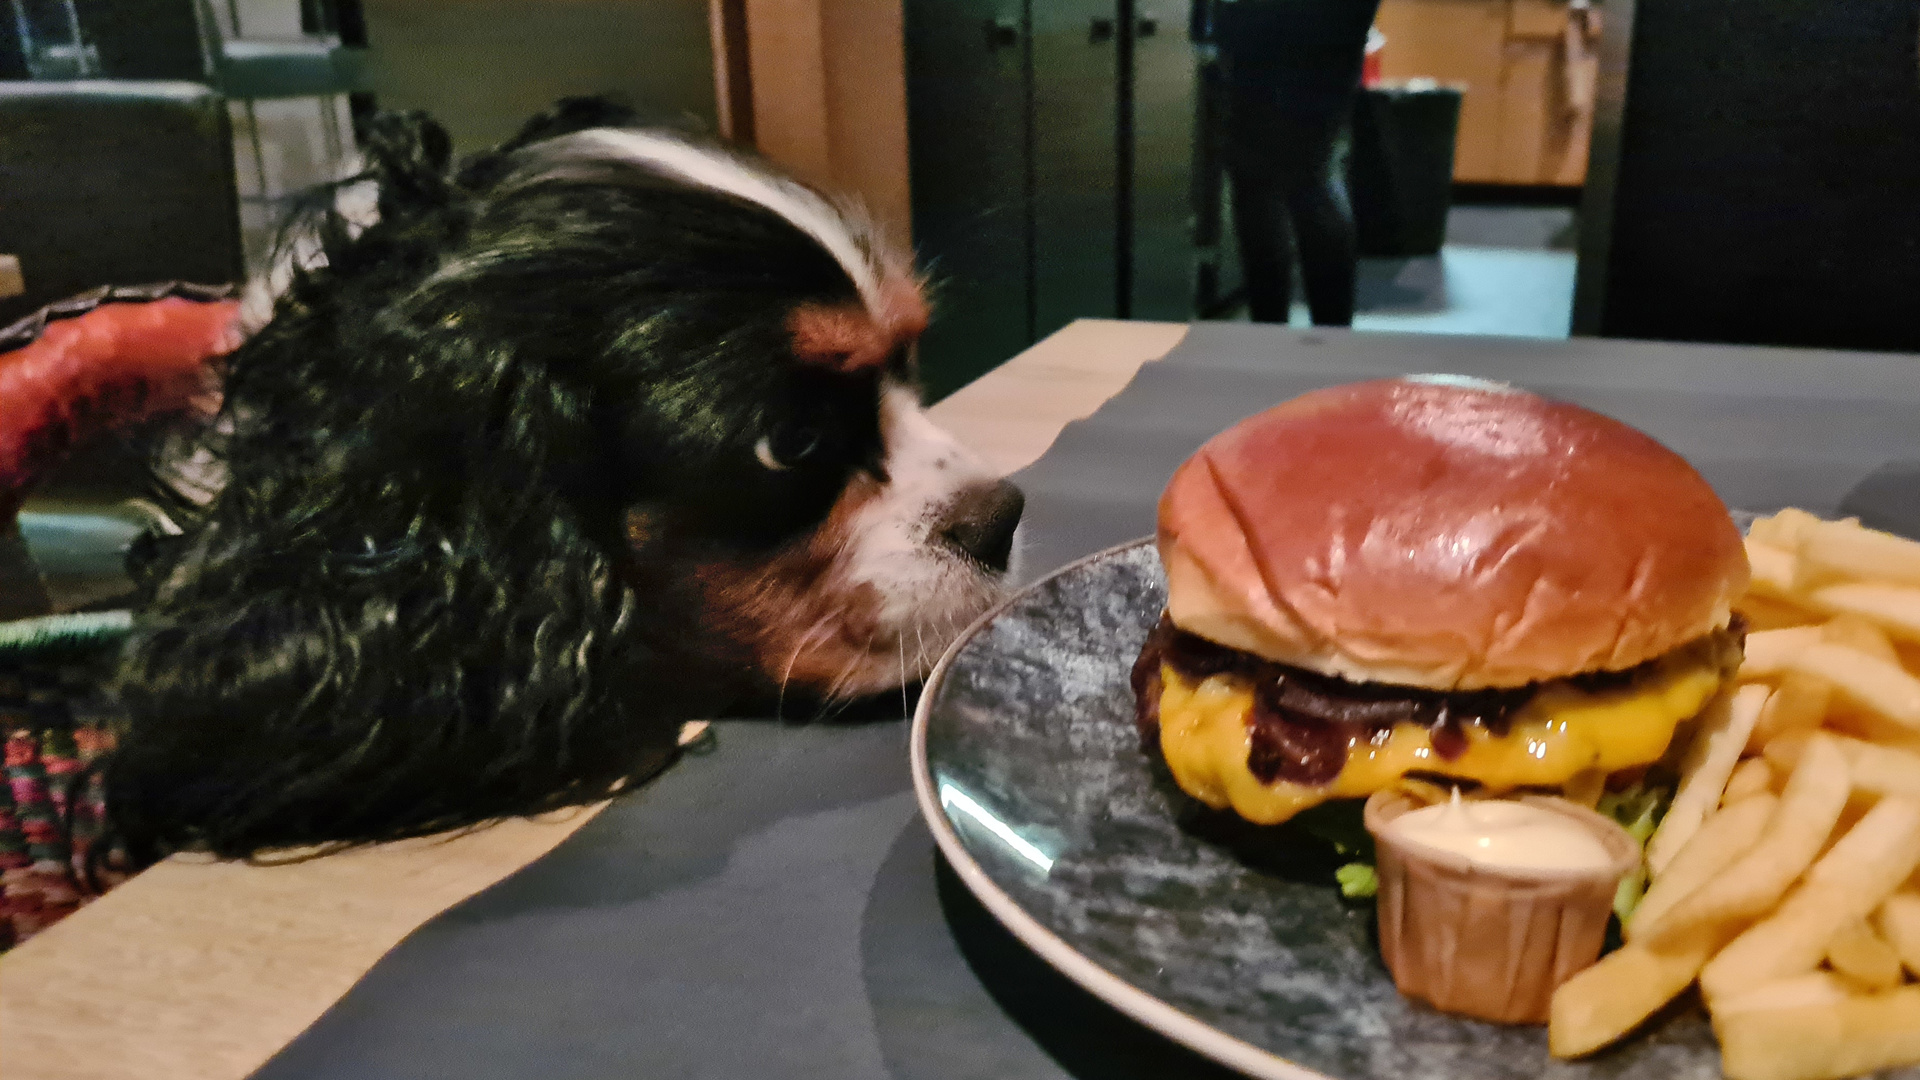 Restauranttisch mit Burger, Hund im Korb hat das Kinn auf den Tisch gelegt und wäre interessiert